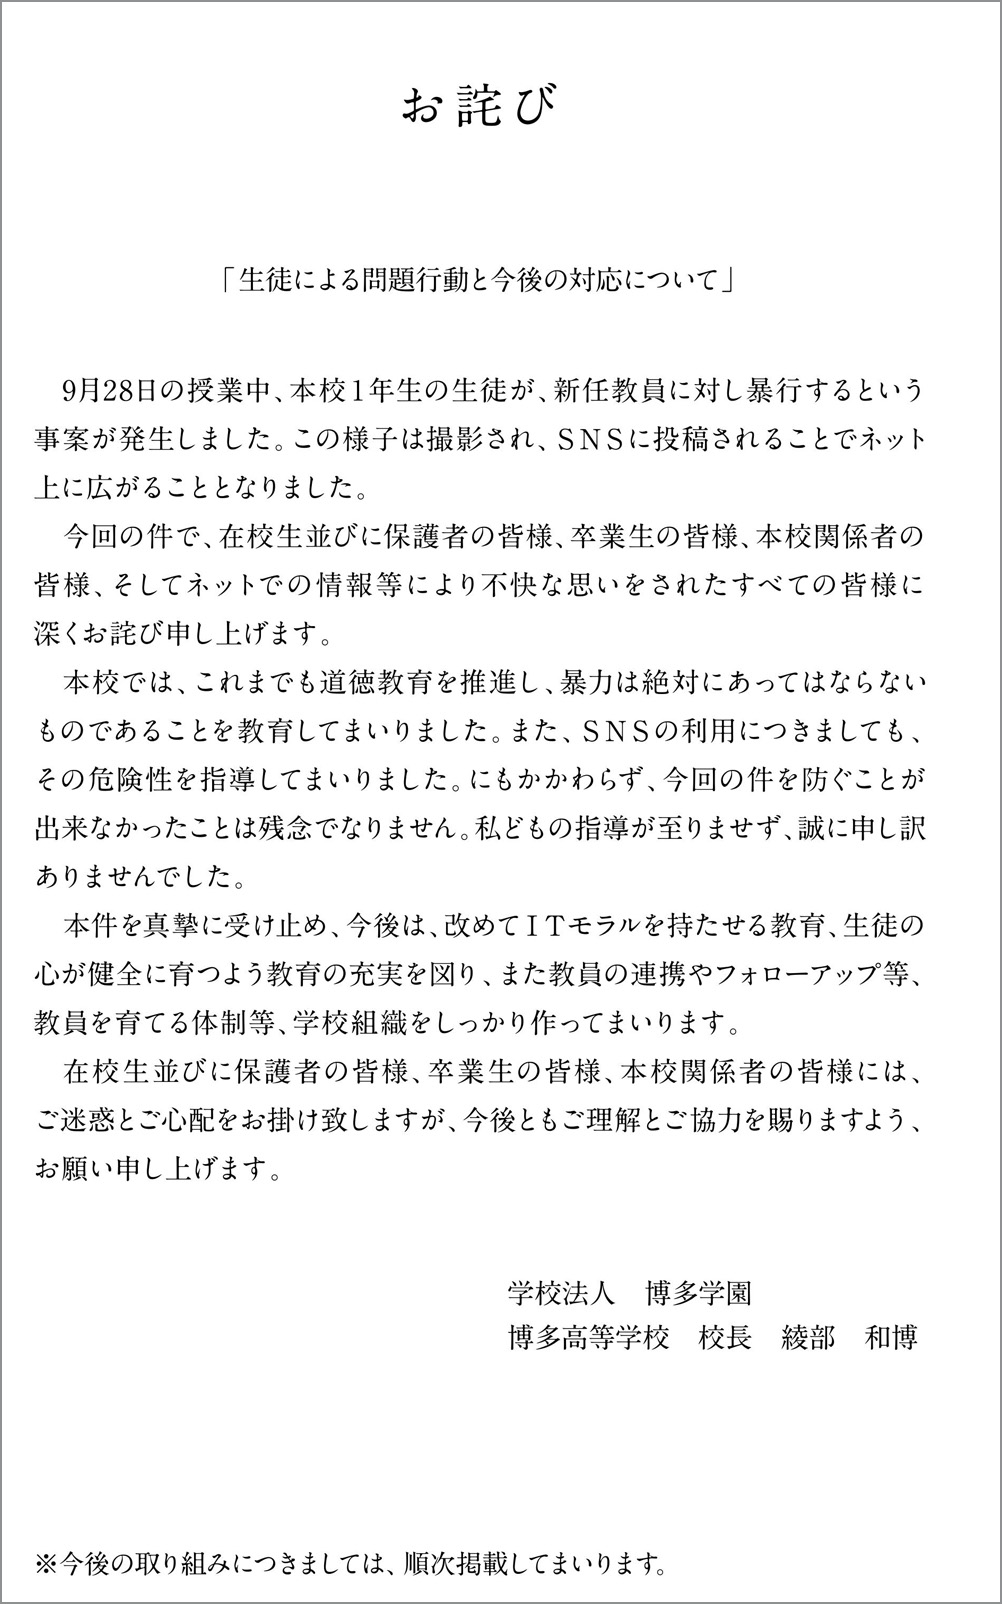 私立博多高校がサイトで公開したお詫び [<a href="http://hakata.ed.jp/highschool/_common/pdf/20171002.pdf">PDF</a>]